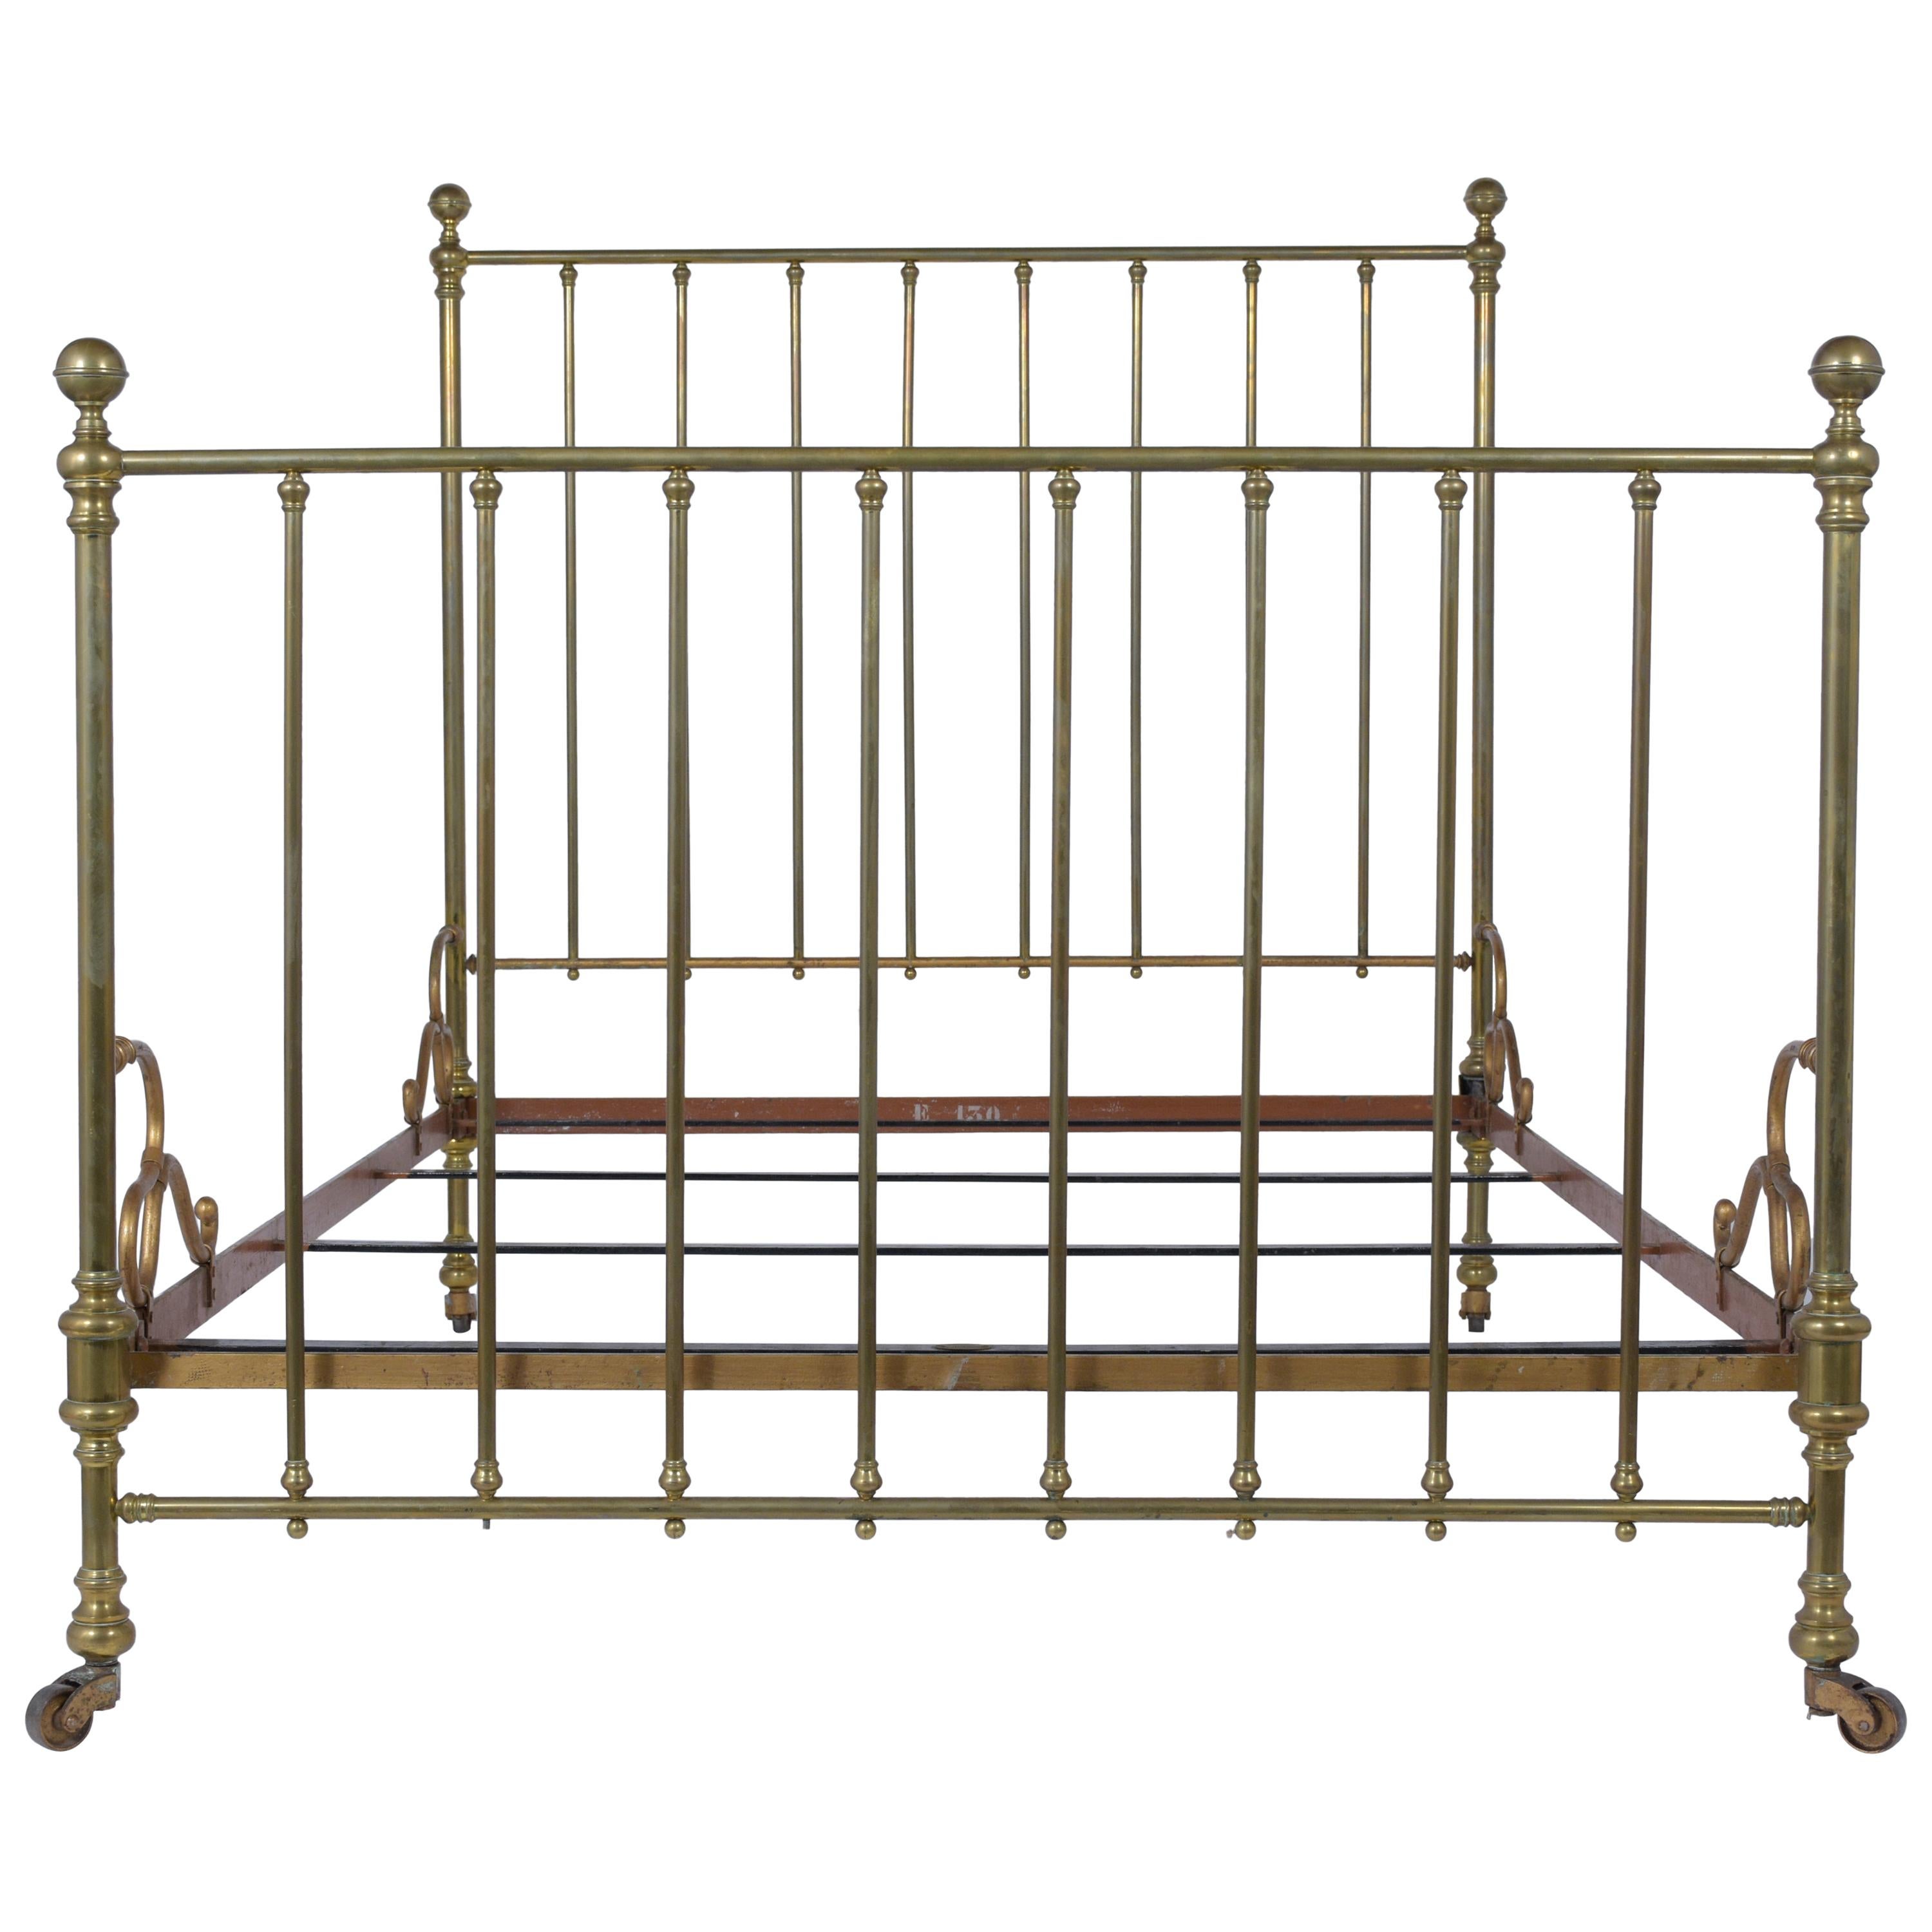 Brass Antique Bed Frame